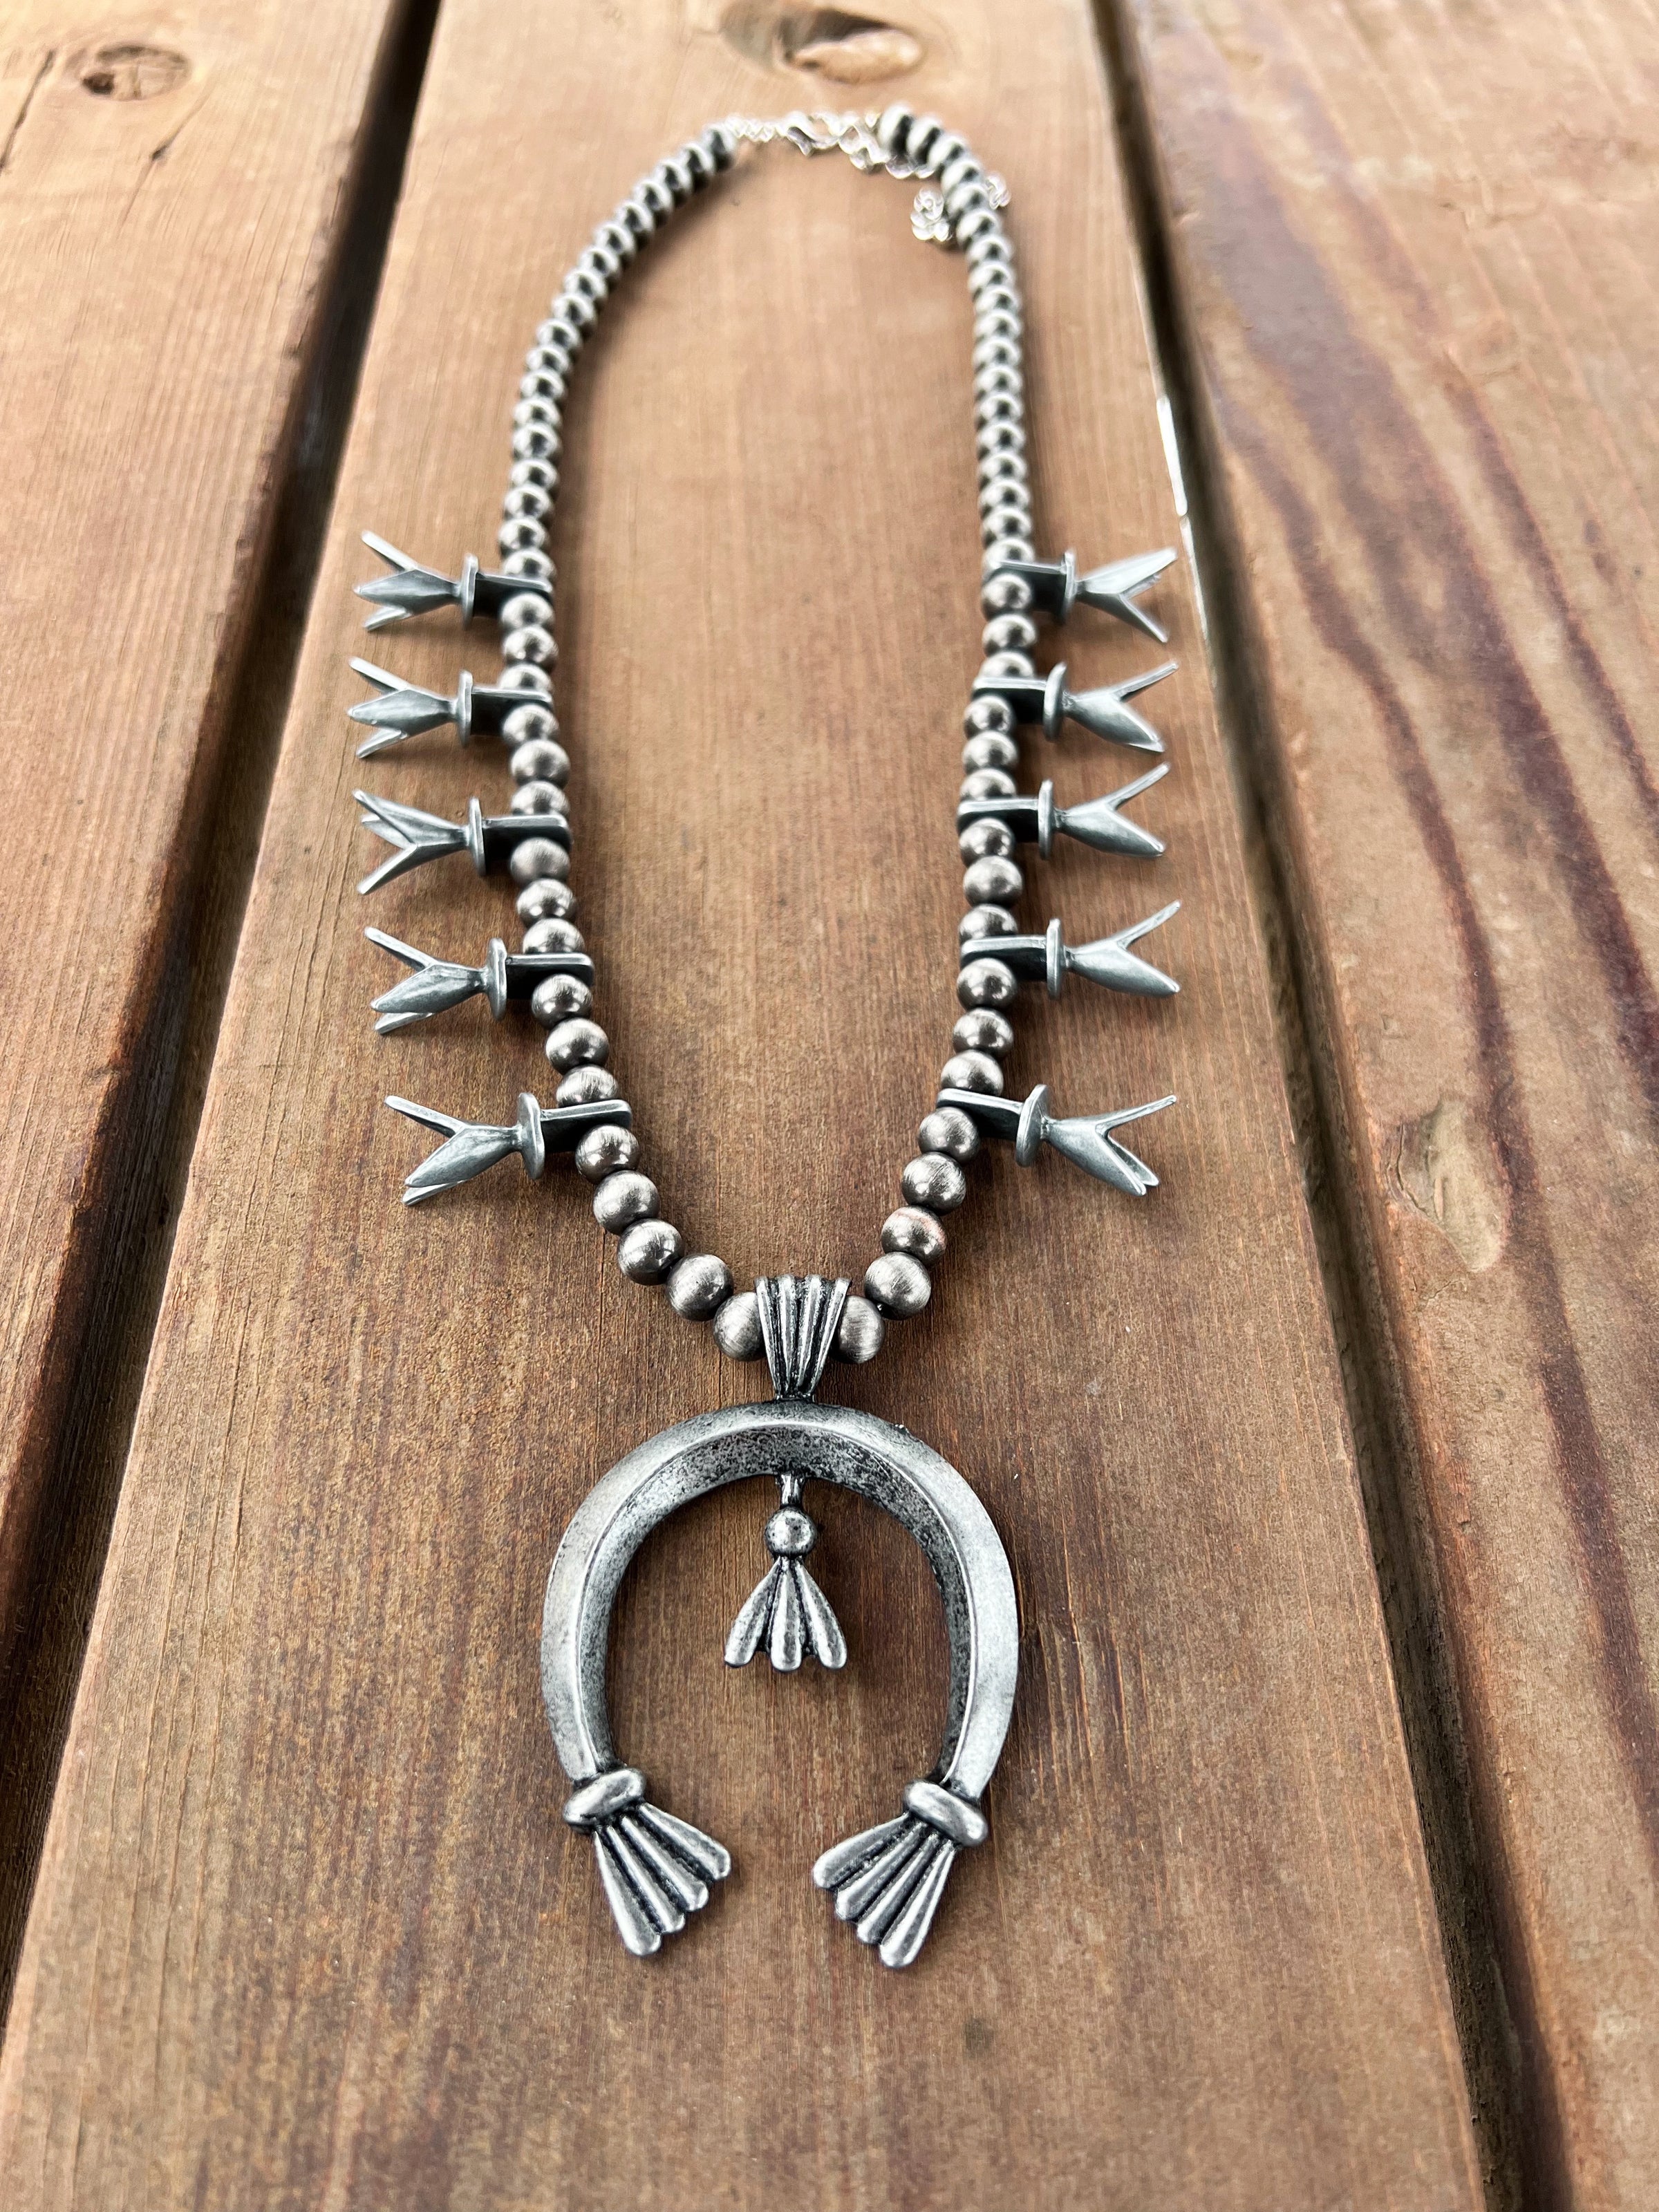 The Navajo Silver Necklace